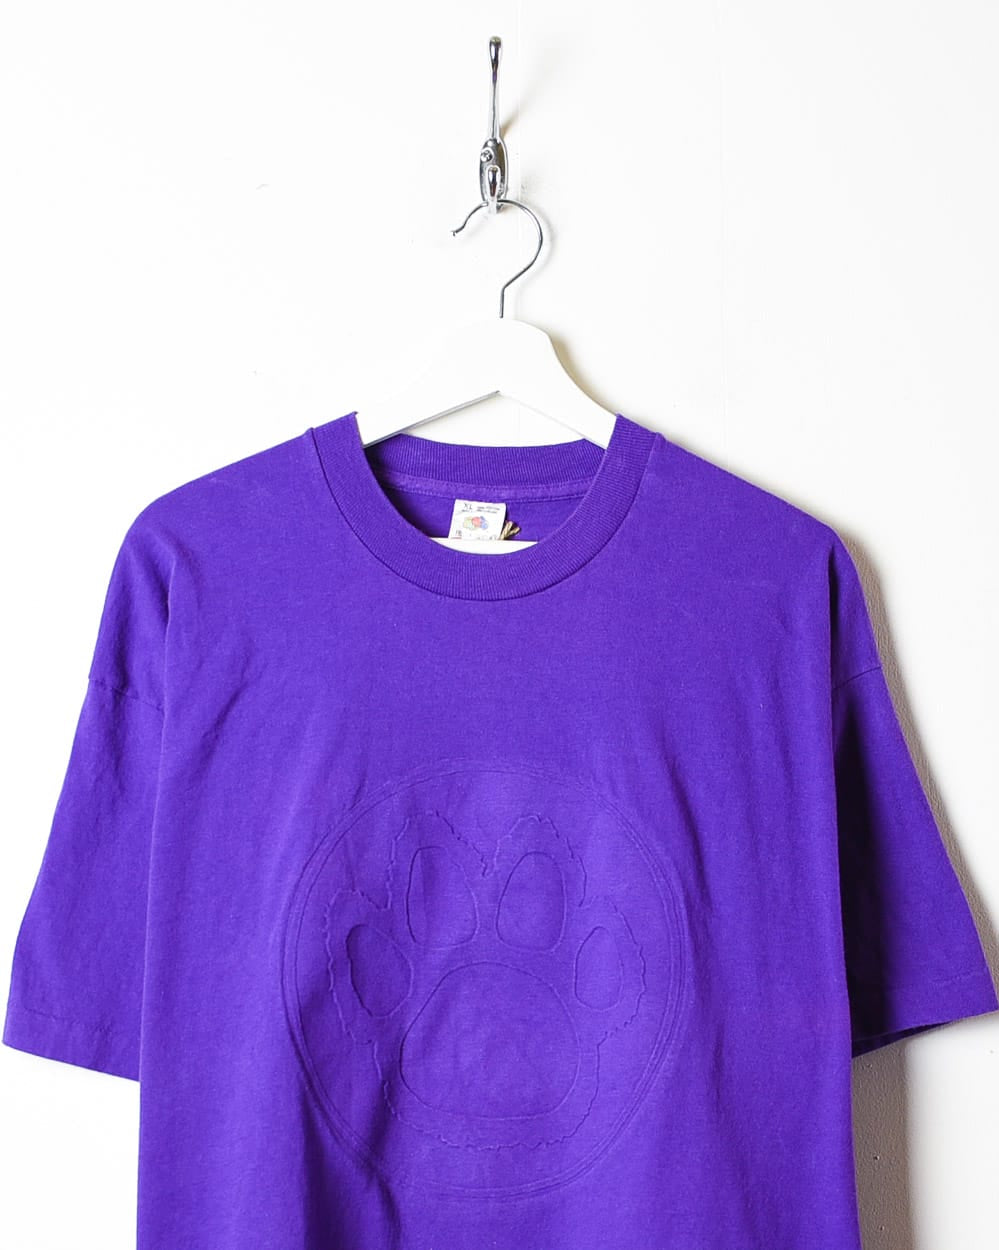 Purple Paw Print Single Stitch T-Shirt - X-Large